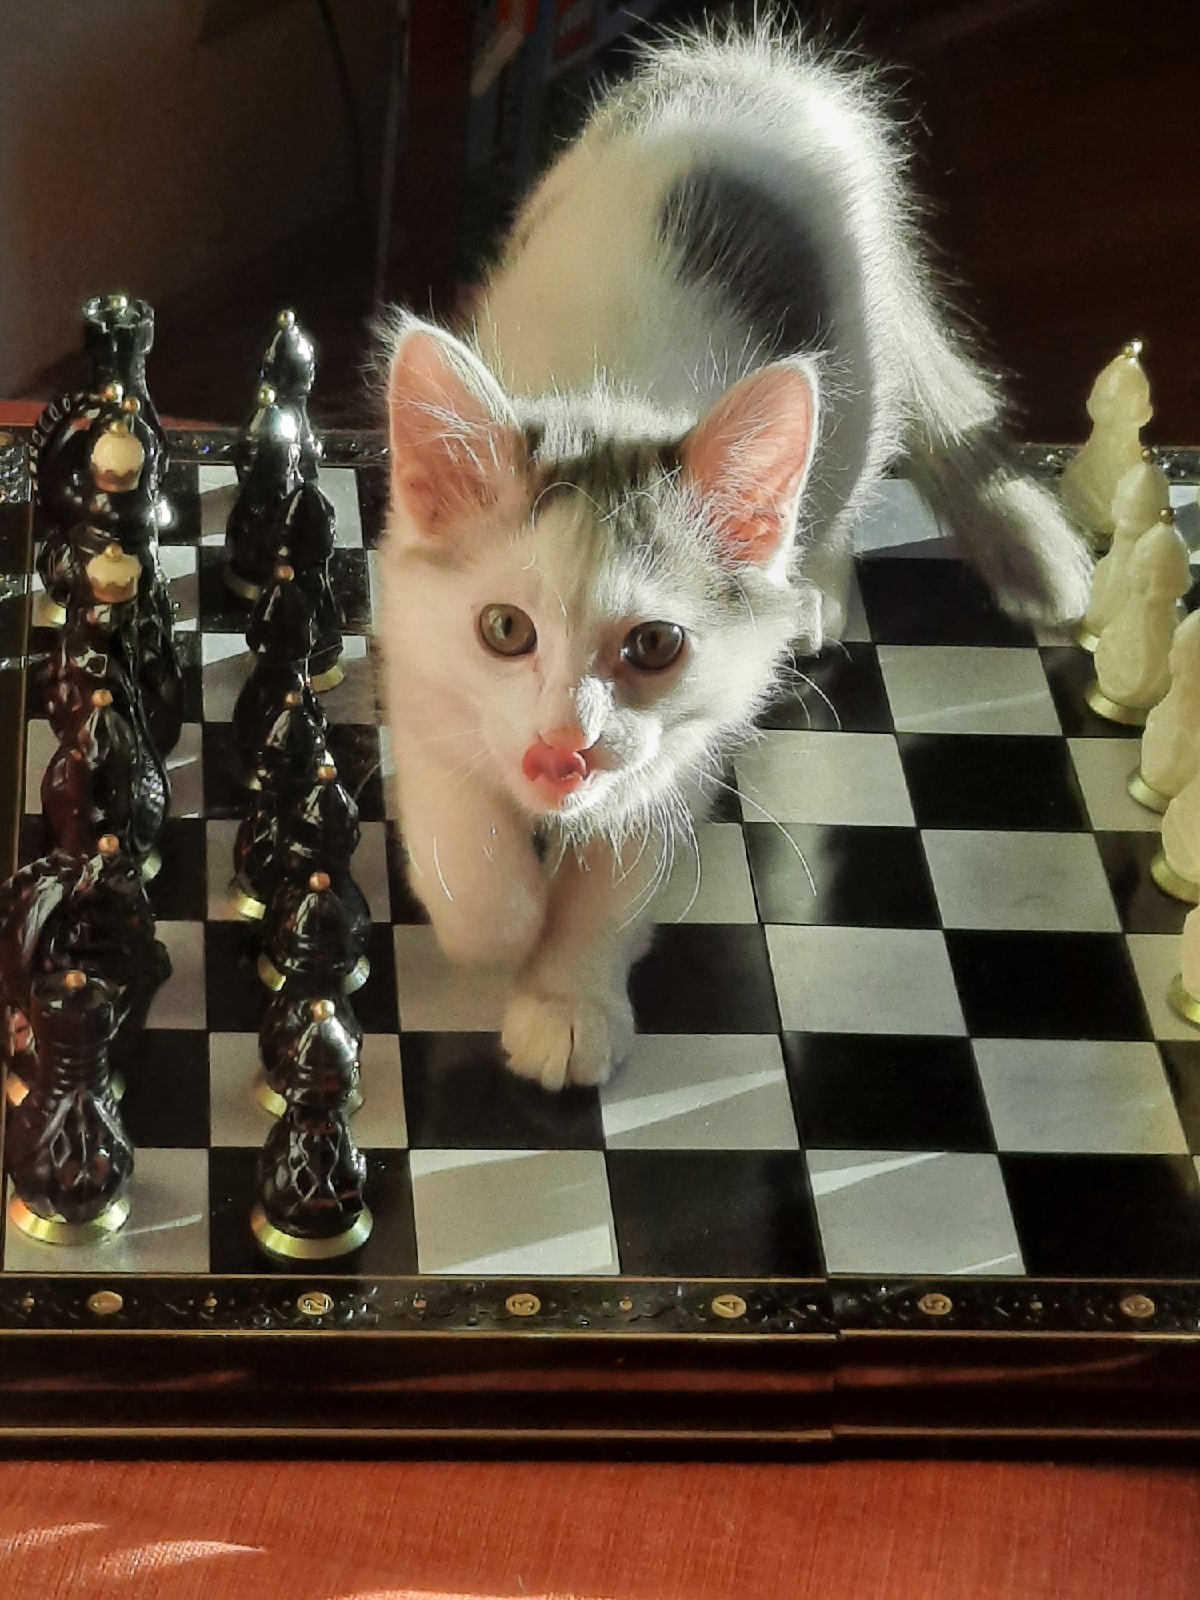 Классная игра - шахматы, всегда выигрываю